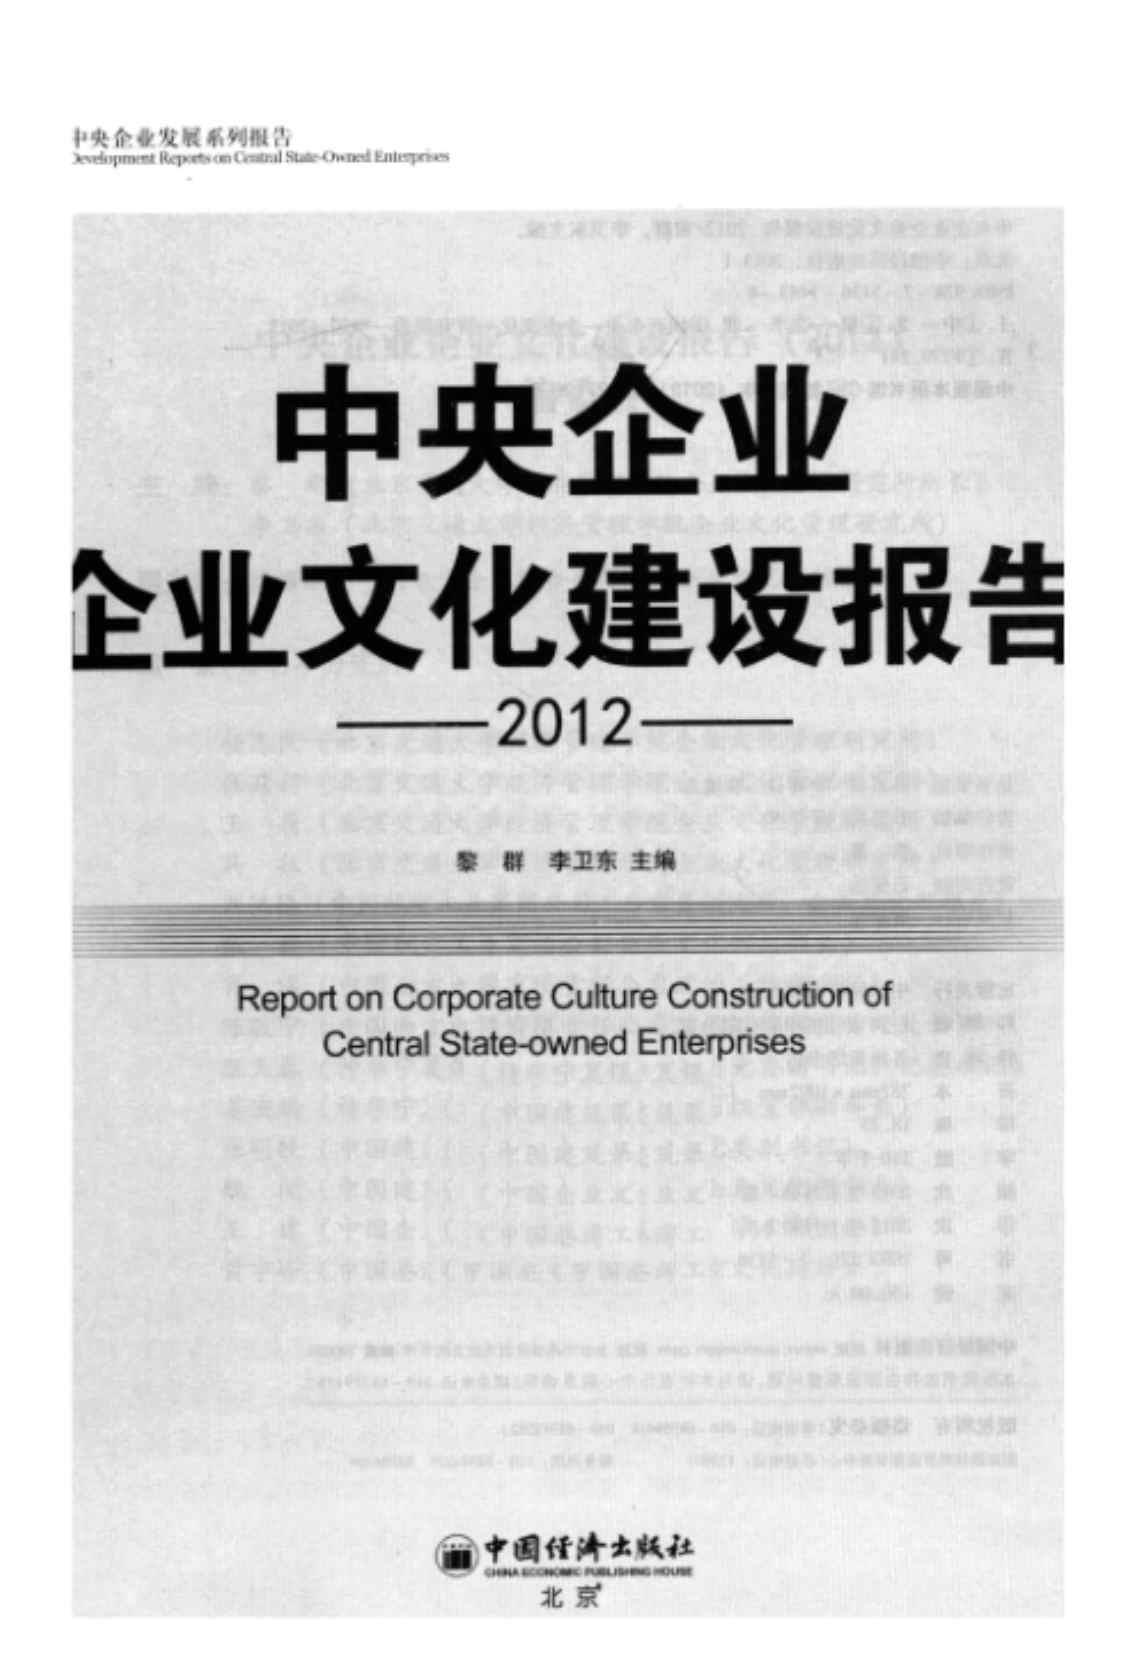 [中央企业企业文化建设报告(2012)][黎群、李卫东(主编)]高清PDF电子书下载